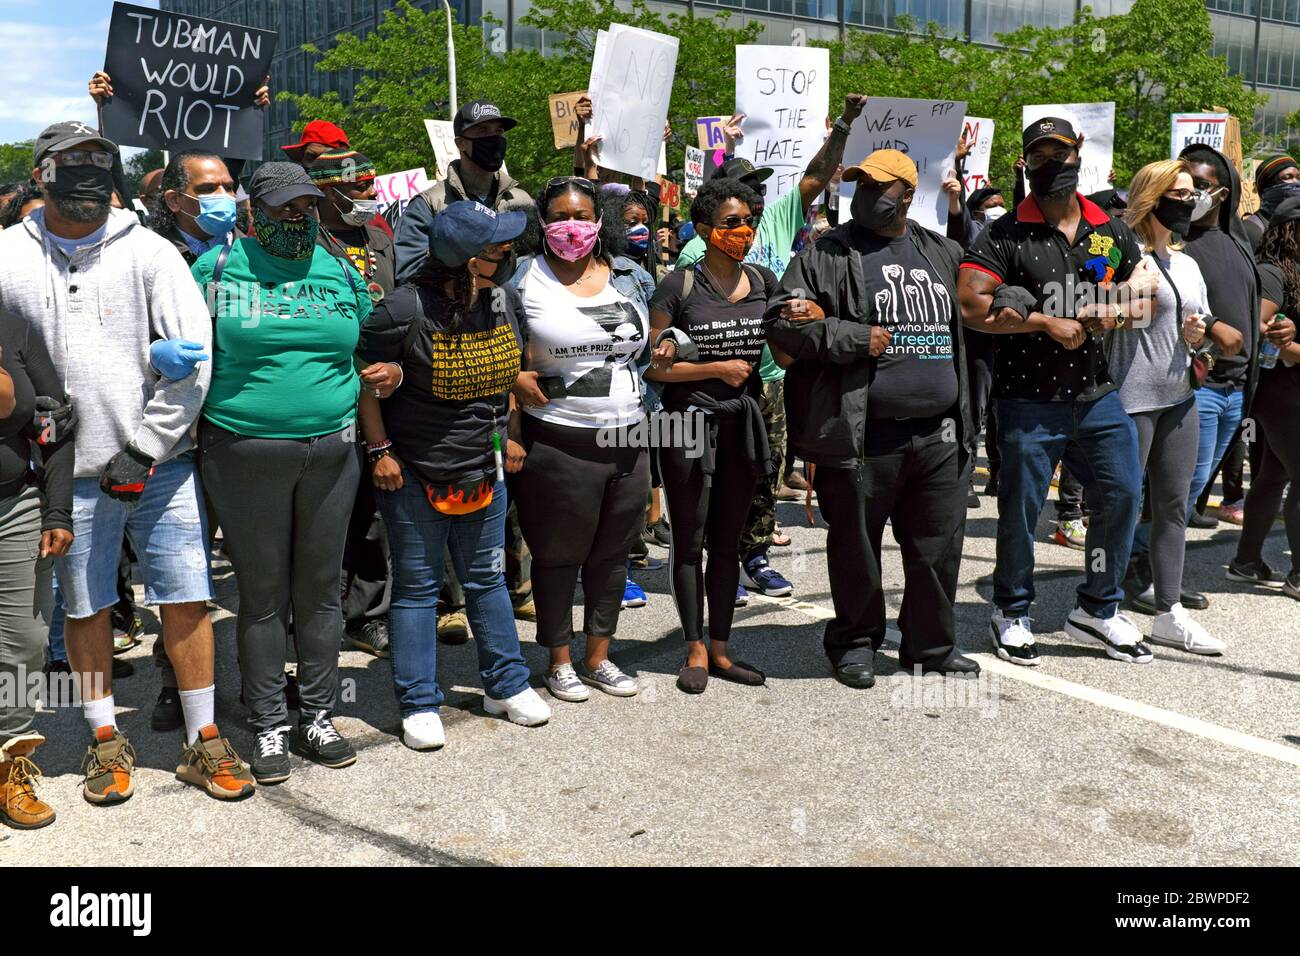 Les manifestants avec des armes et des panneaux ont fait la queue pour une marche de protestation dans le centre-ville de Cleveland, Ohio, États-Unis contre la brutalité policière des Noirs. Banque D'Images